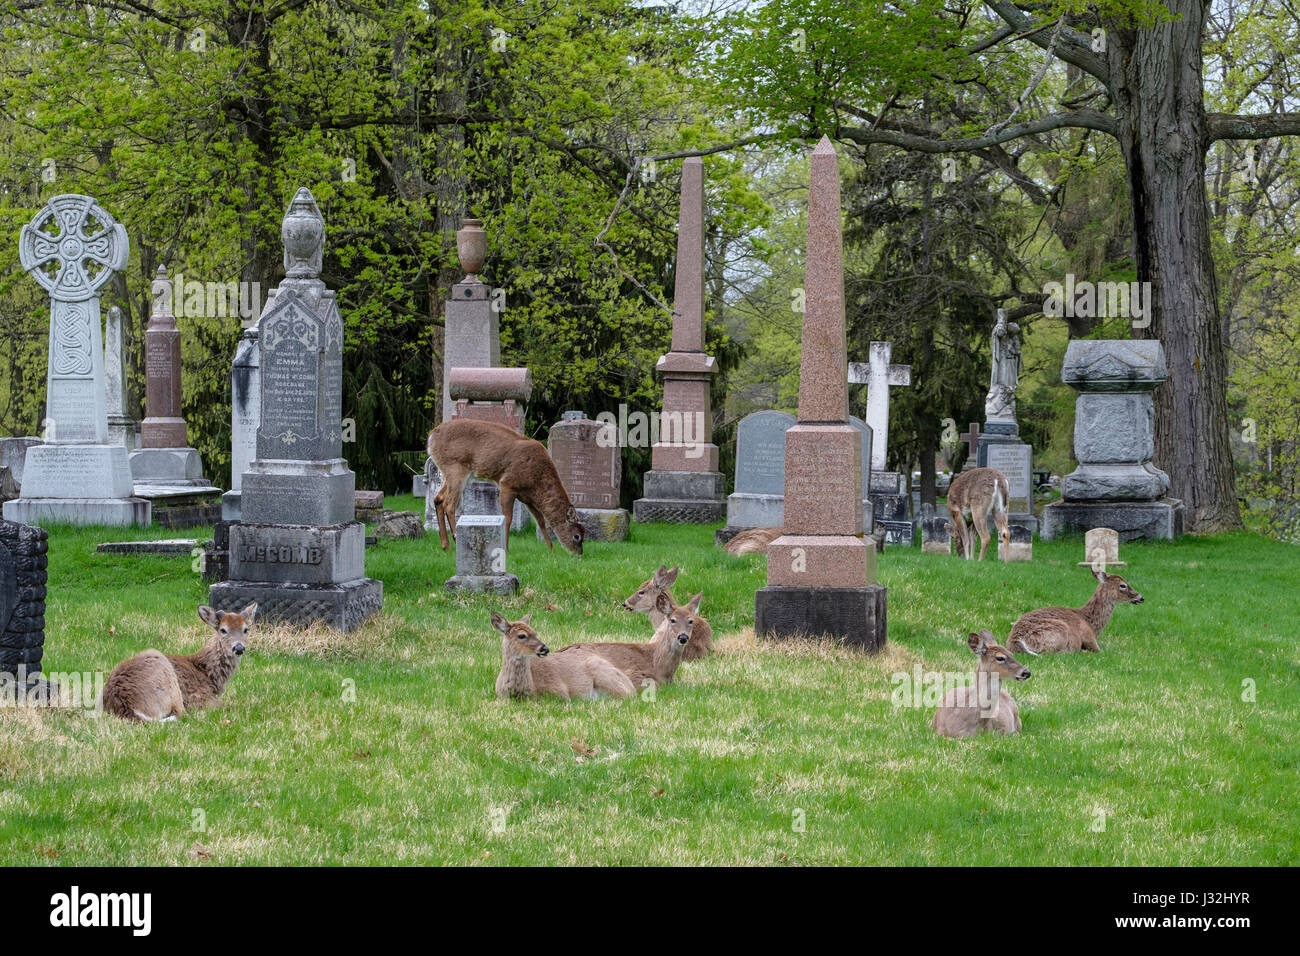 Groupe de jeunes le cerf de Virginie (Odocoileus virginianus), homme, femme, doe, buck, de l'environnement urbain, ville cimetière, London, Ontario, Canada. Banque D'Images